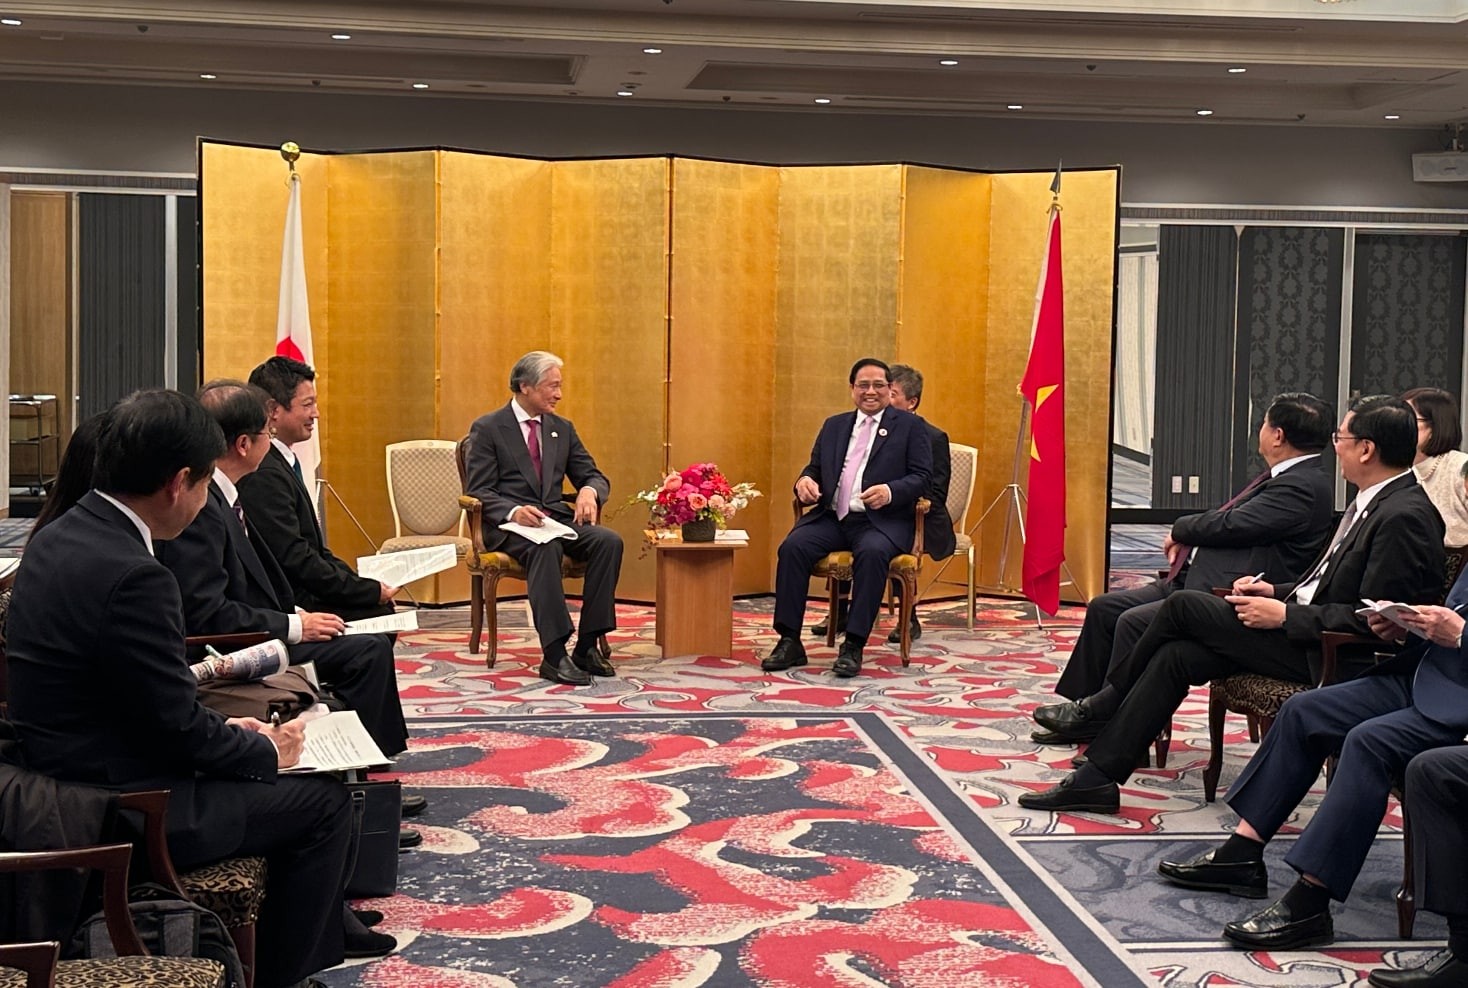 Thủ tướng Phạm Minh Chính tiếp một số Thống đốc của Nhật Bản